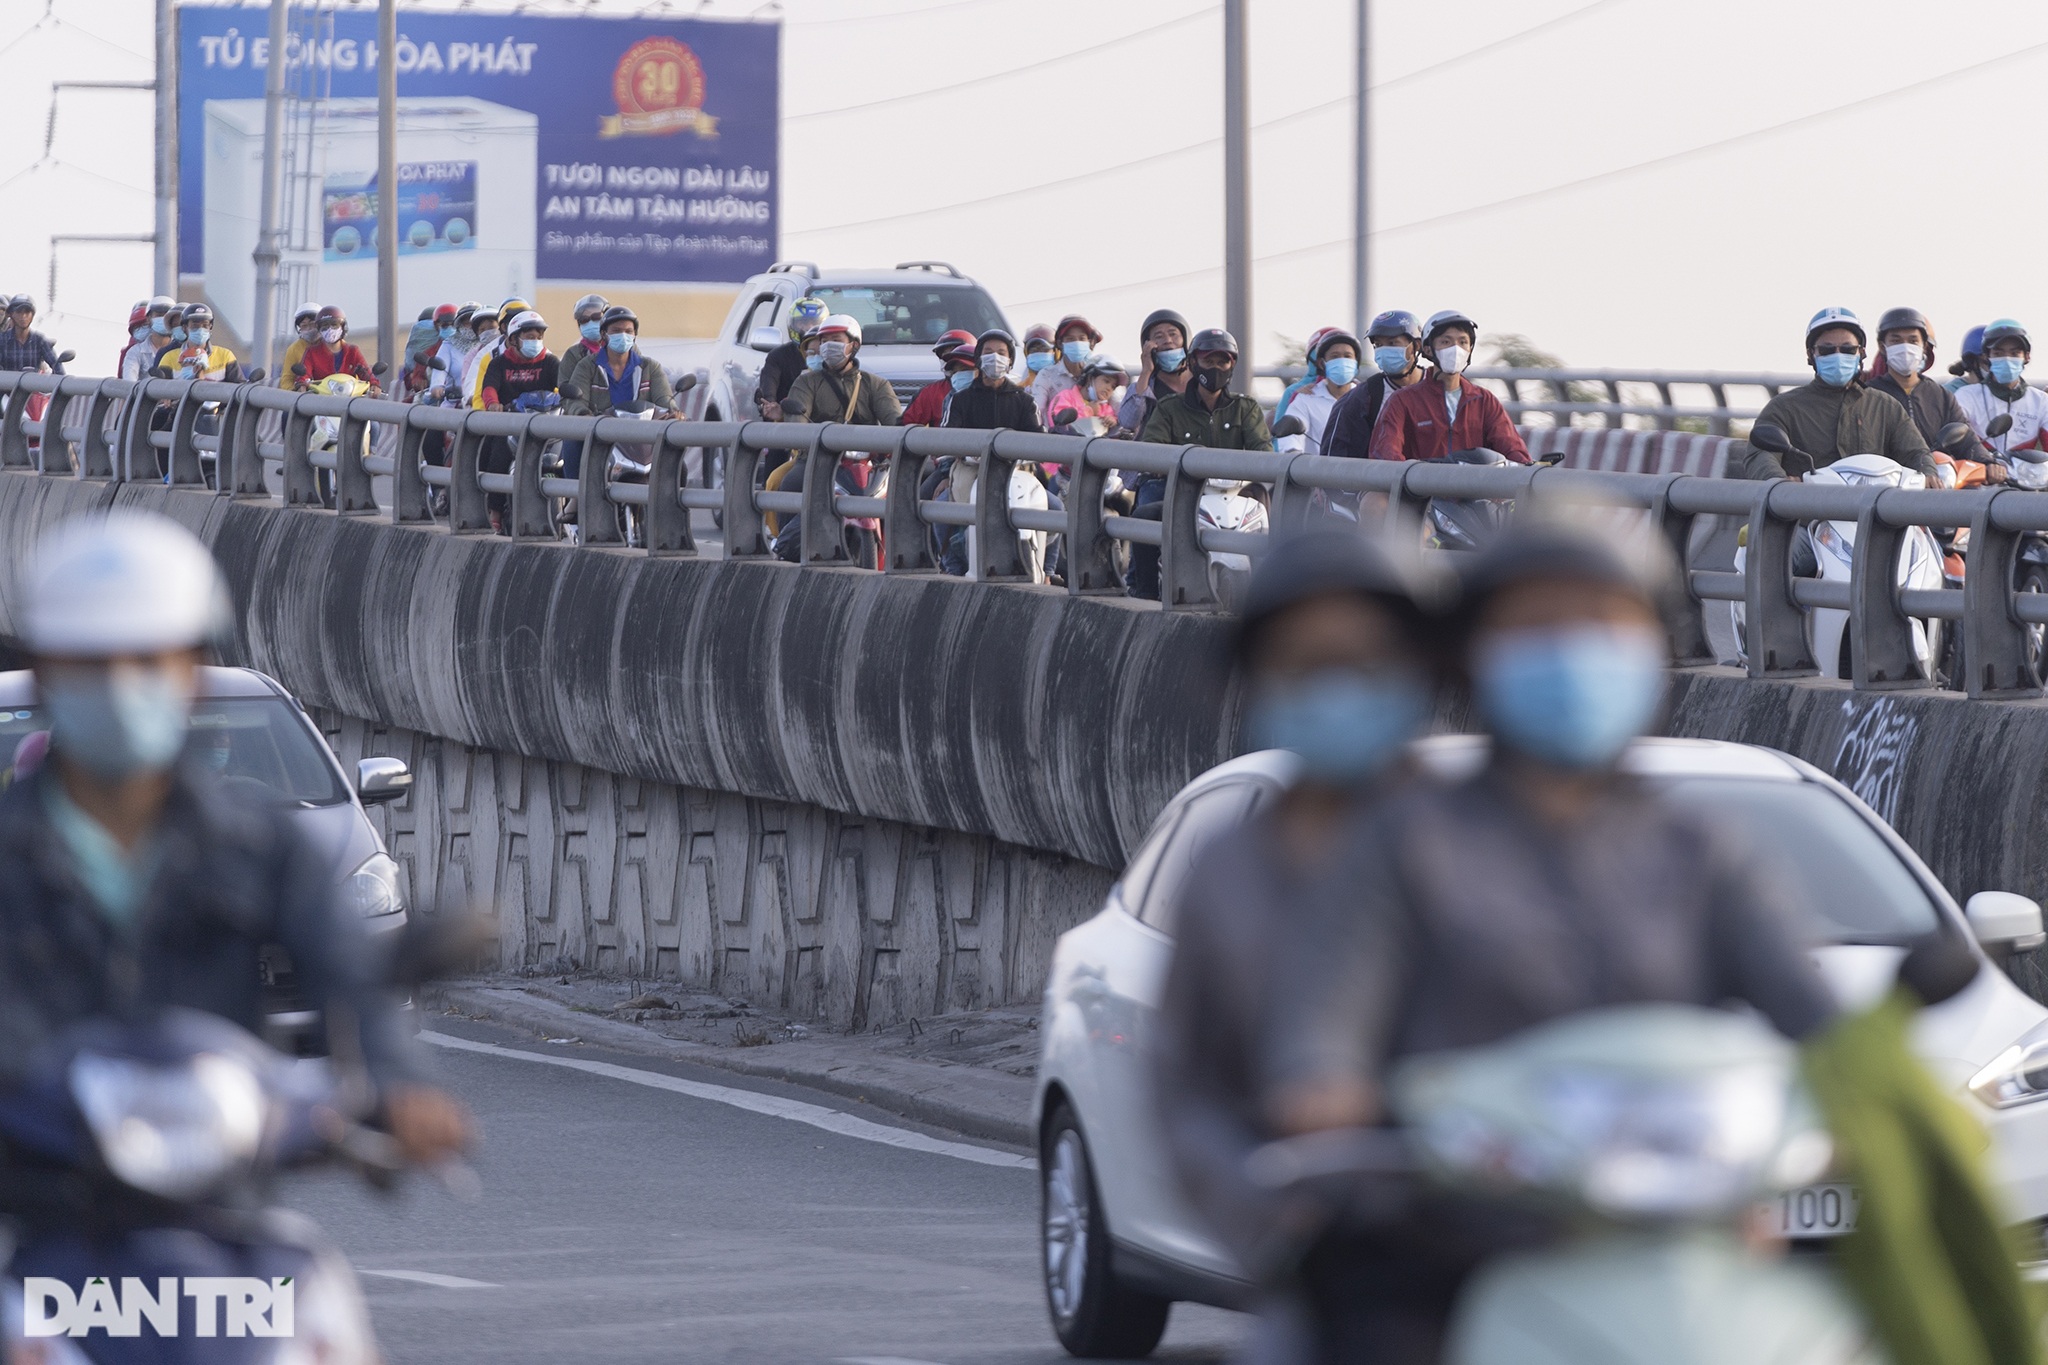 Người dân trở lại Sài Gòn sớm, giao thông cửa ngõ ùn tắc, hỗn loạn - 12